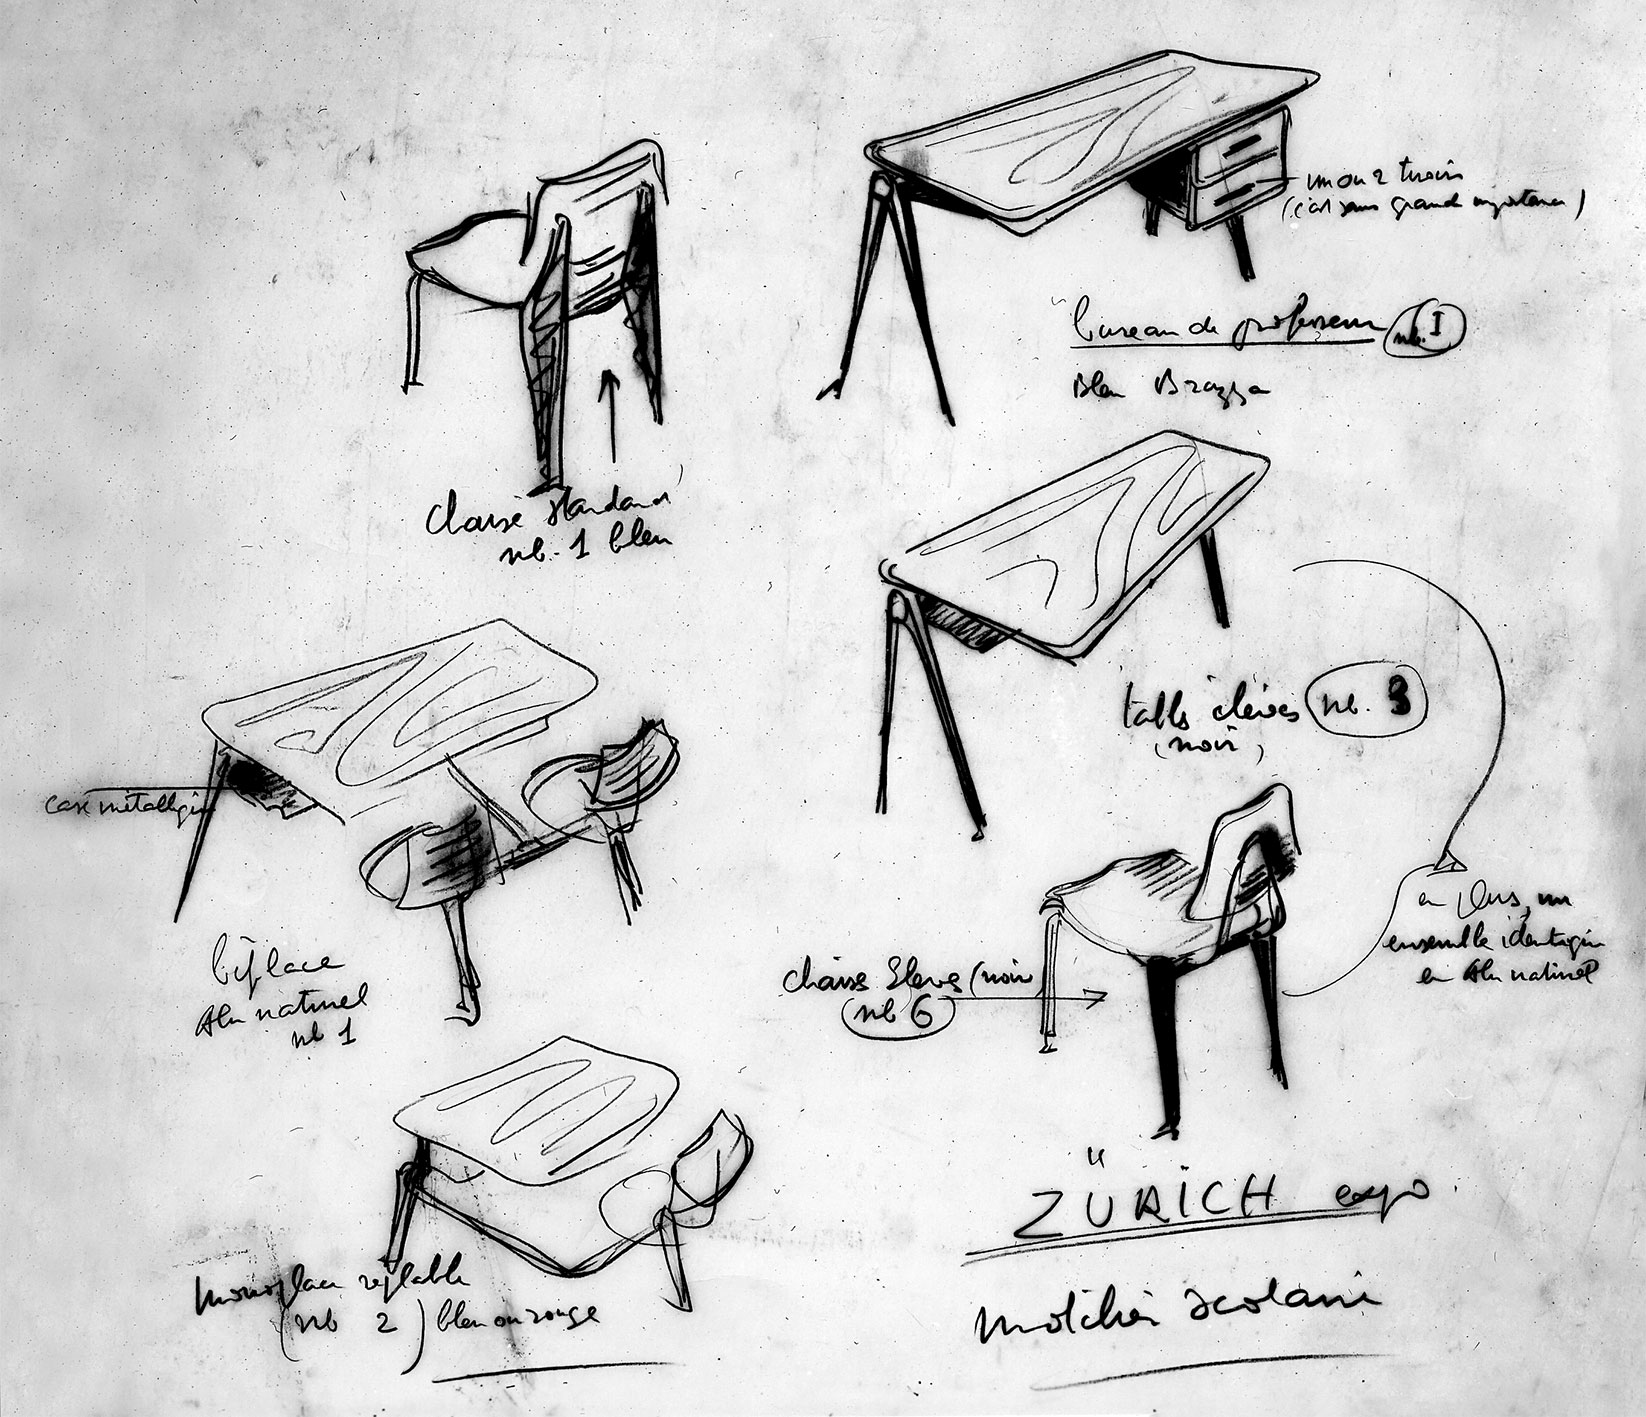 « Zurich expo, mobilier scolaire ». Nomenclature des modèles présentés à l’Exposition internationale des constructions scolaires, Zurich, juin 1953. Croquis de Jean Prouvé.